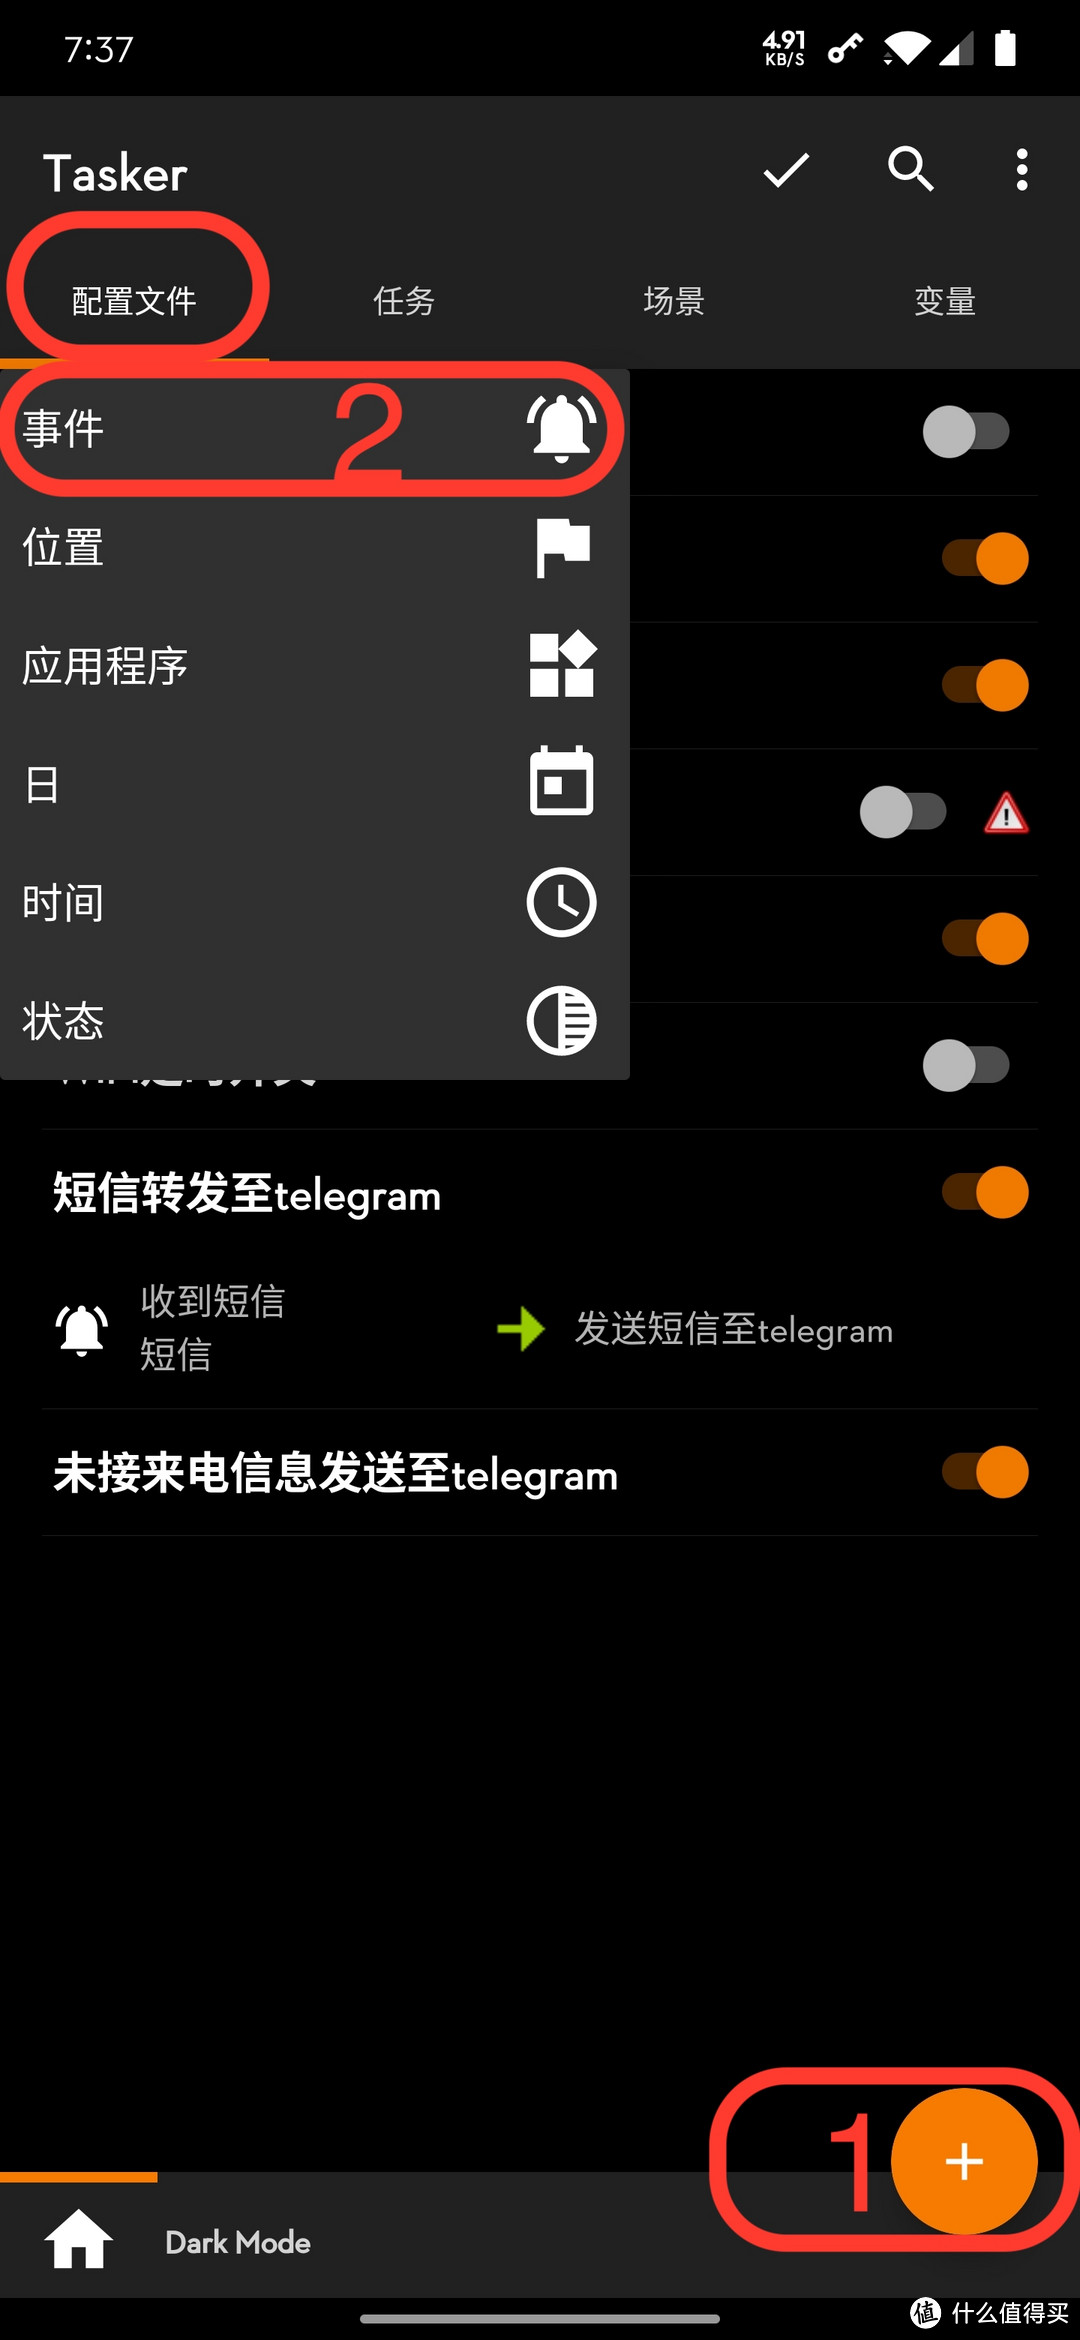 Android手机利用Tasker将短信/未接来电转发至Telegram